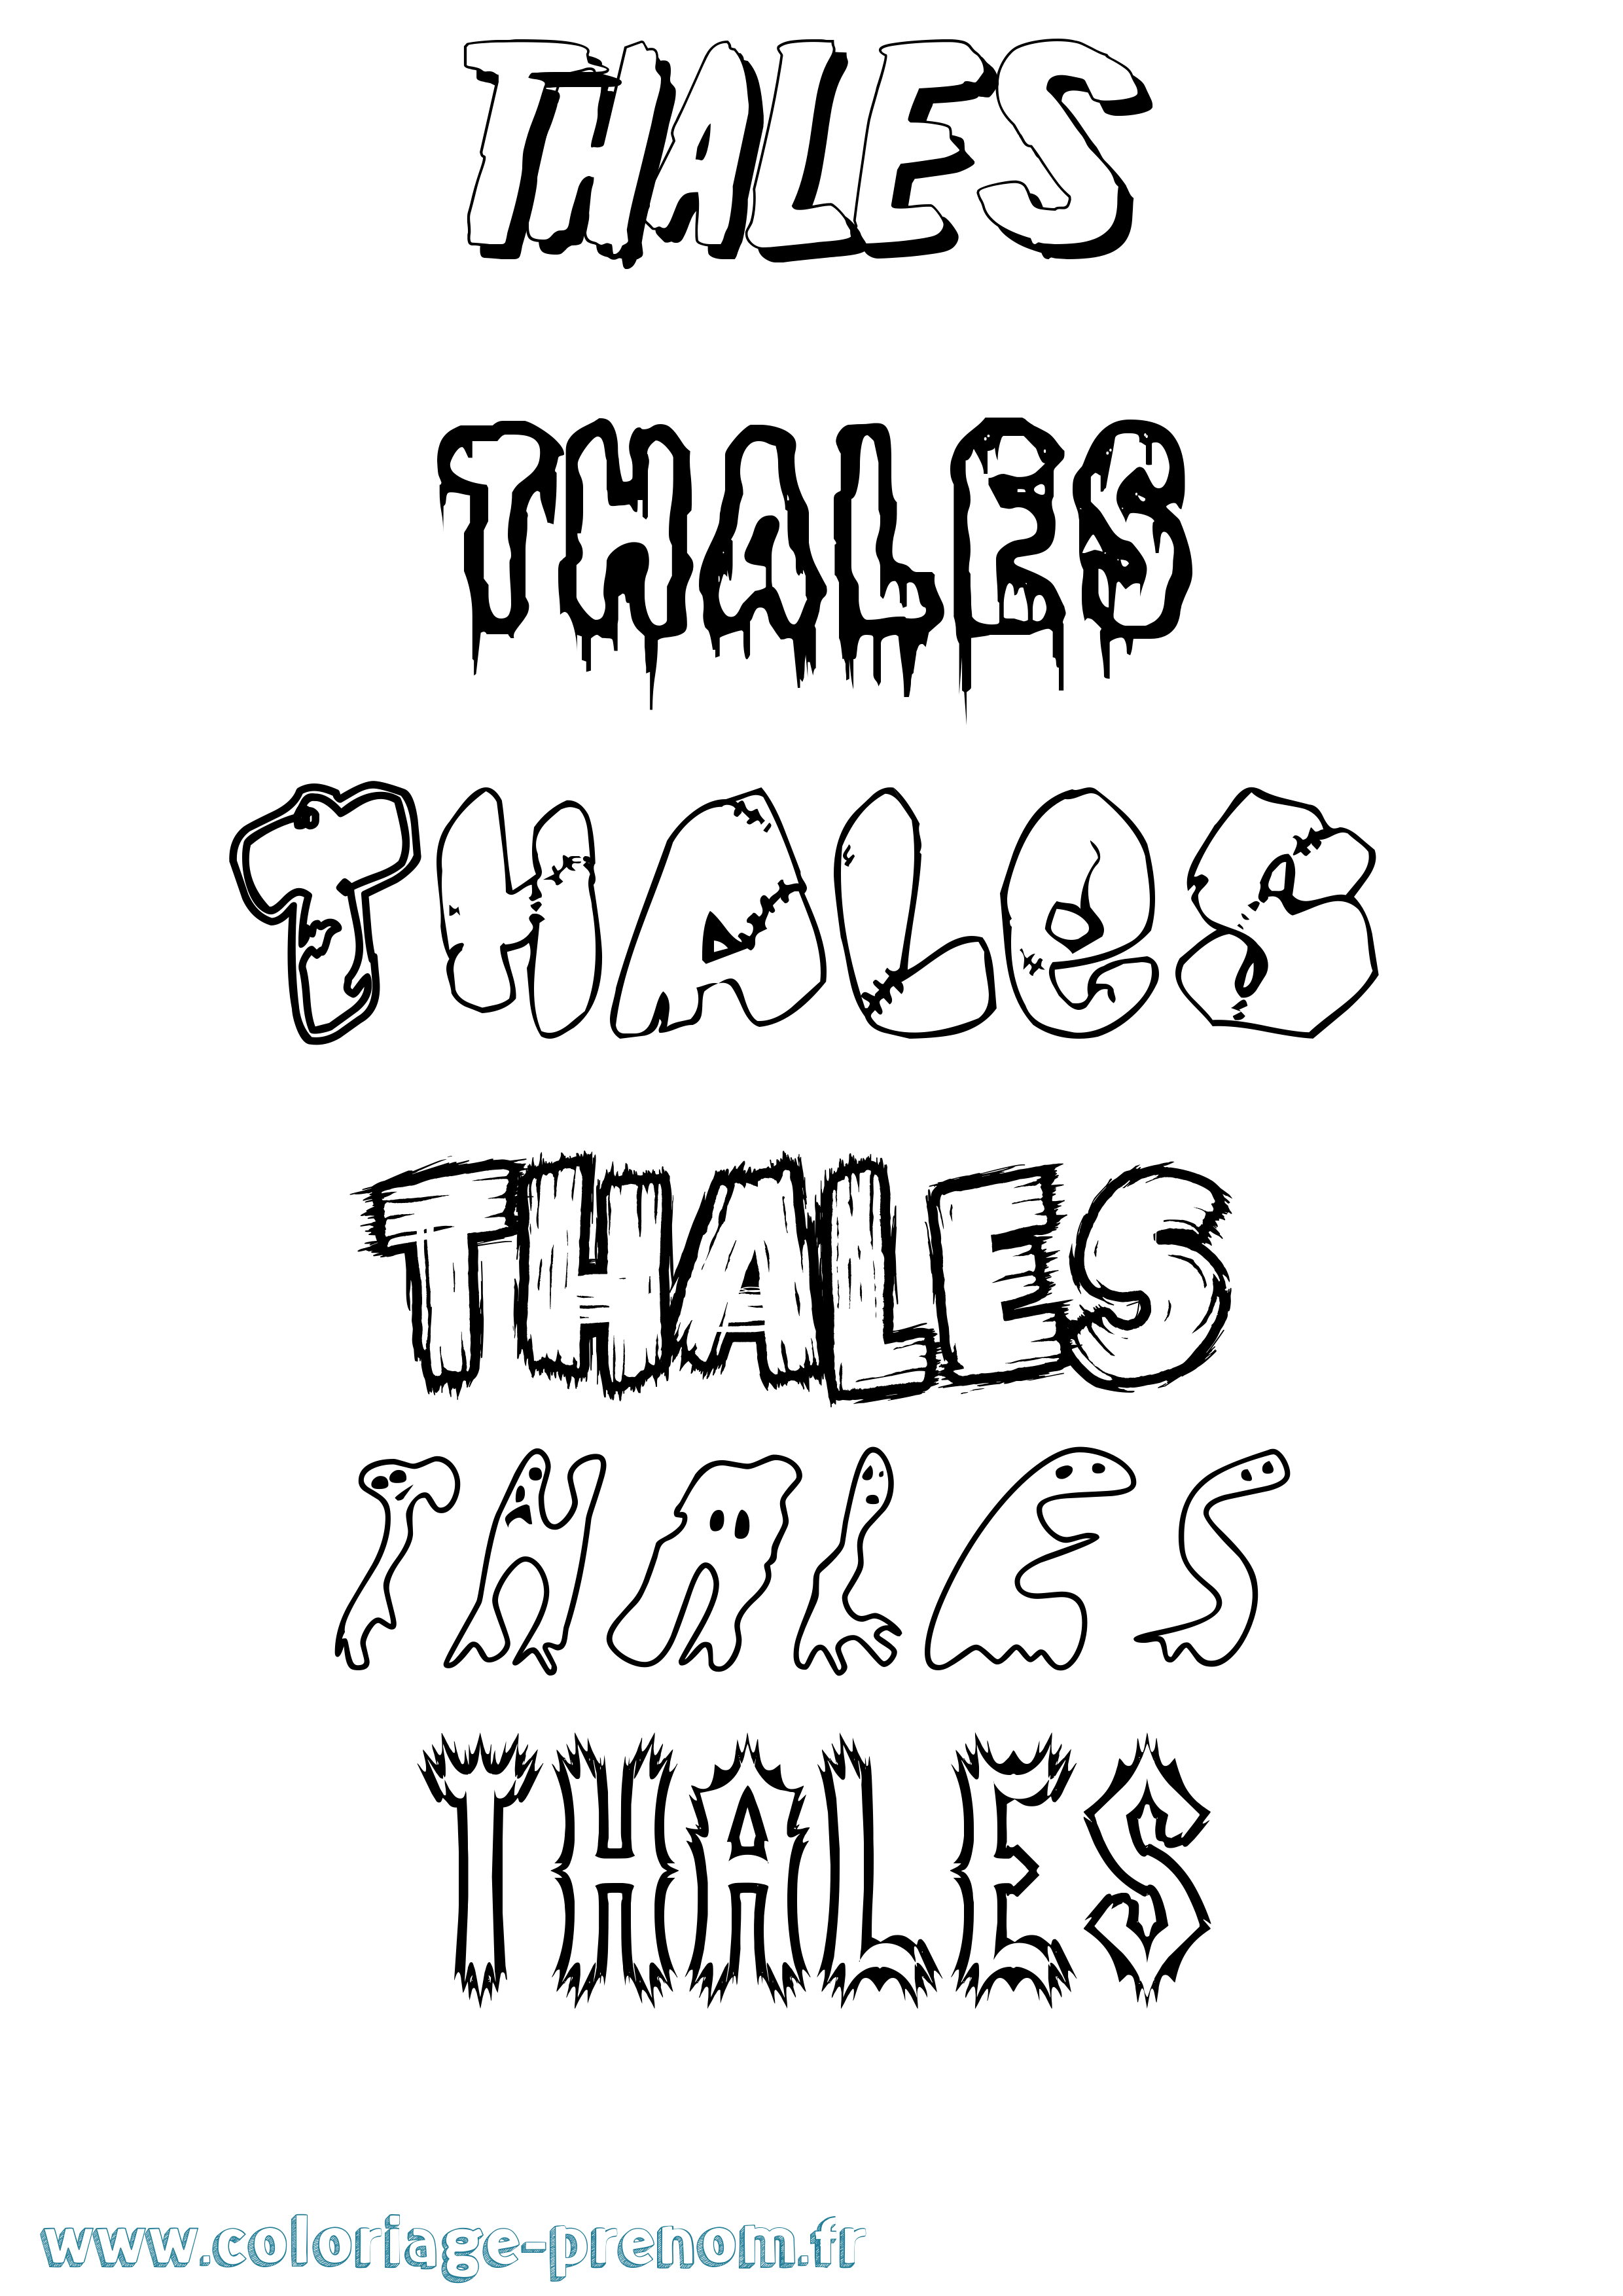 Coloriage prénom Thales Frisson